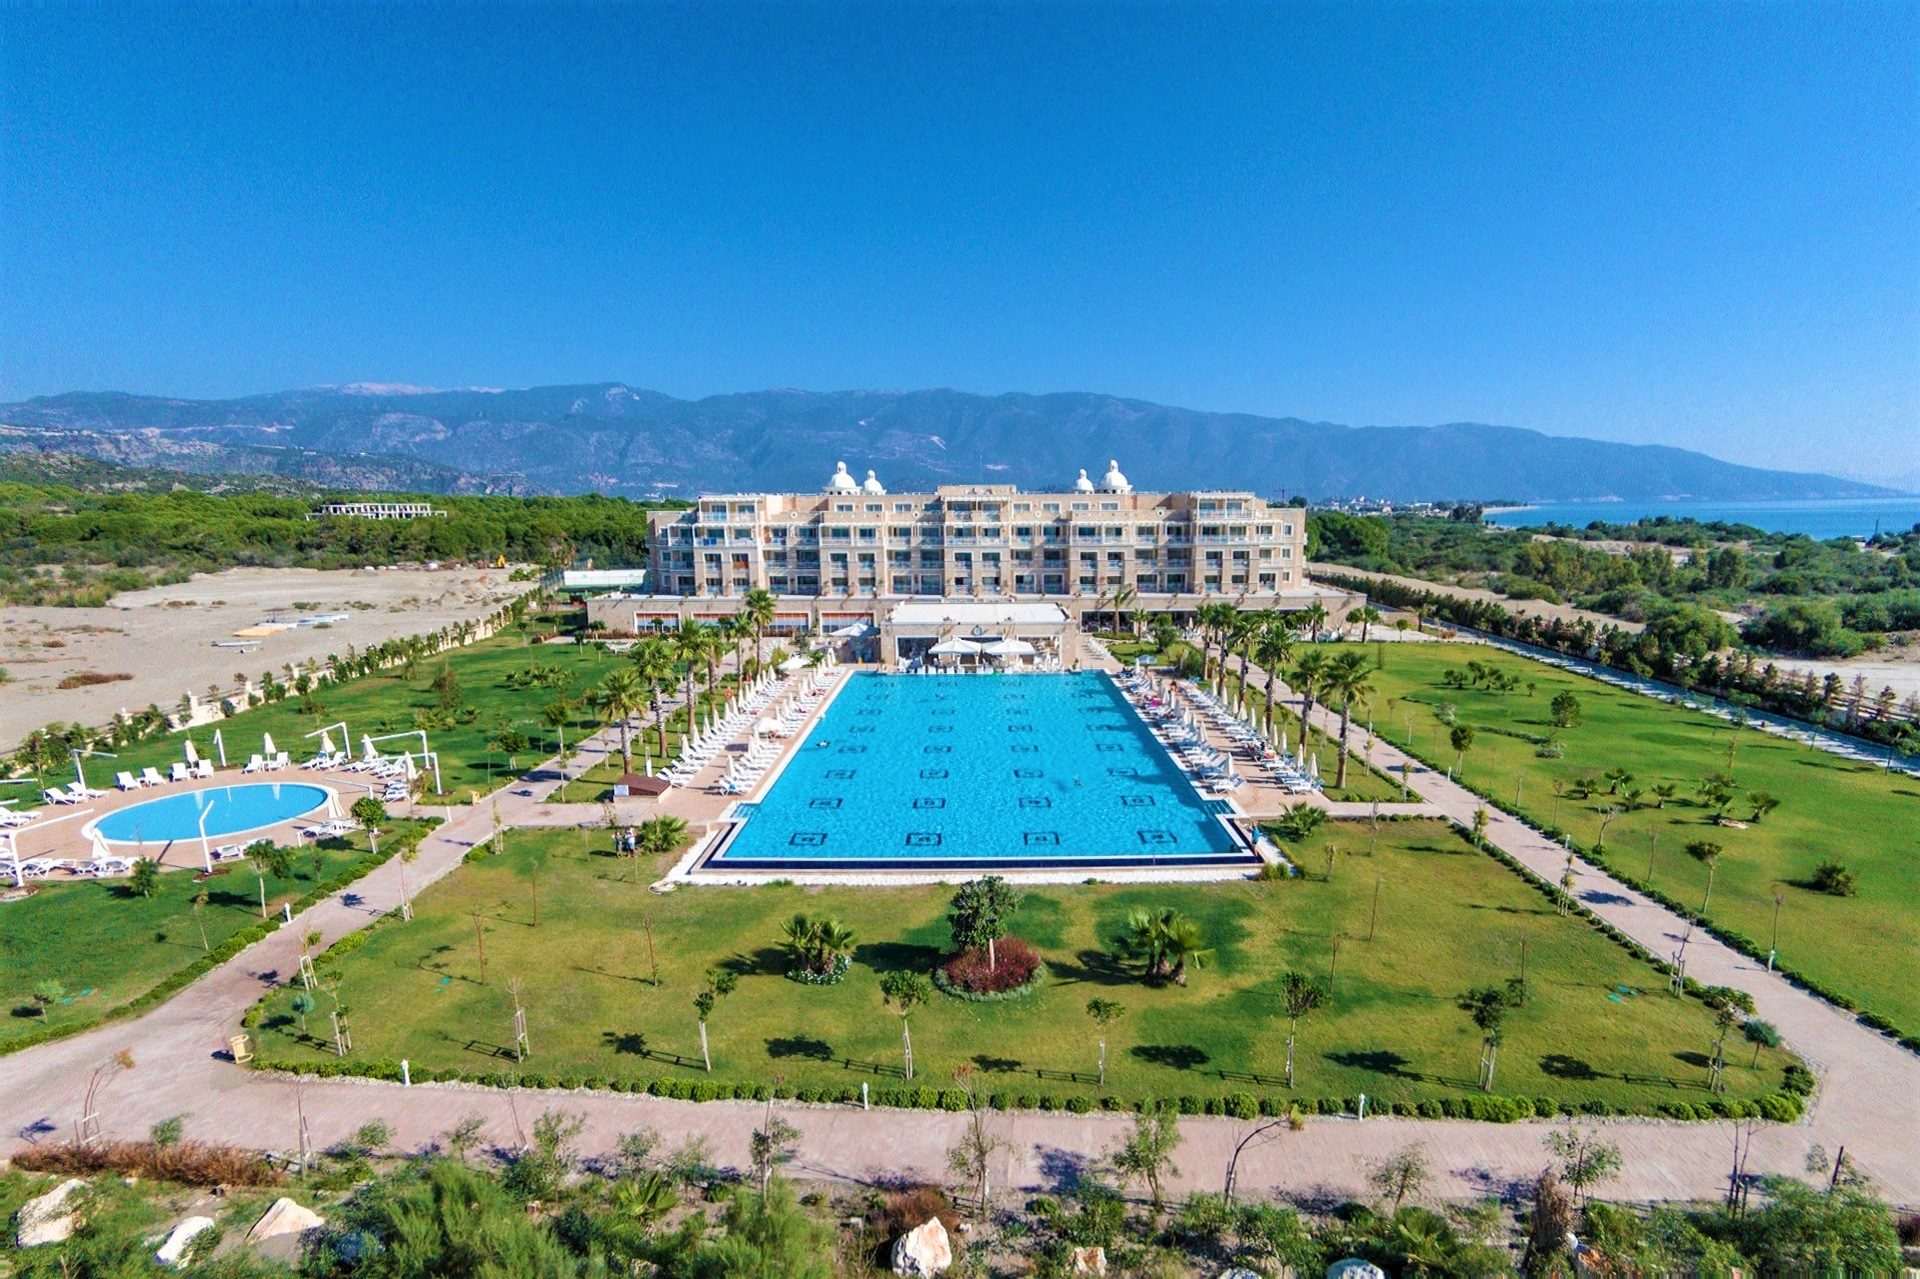 hotele w Turcji, oferta all inclusive, wakacje z itaką, wczasy w Turcji, Lato 2020